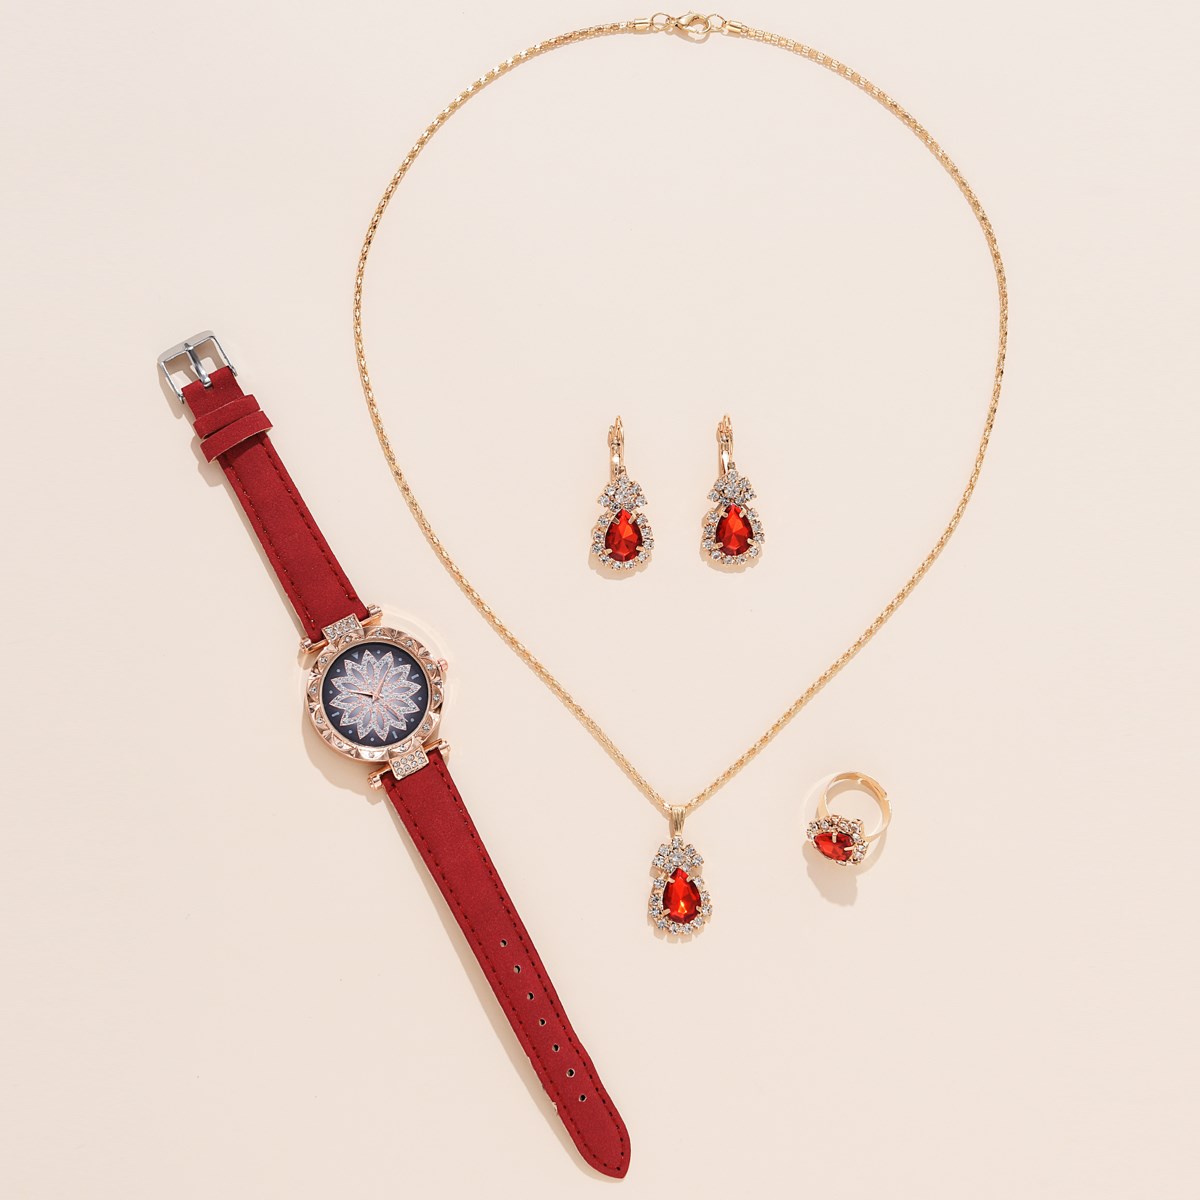 Montre-bracelet-analogique-d-contract-e-pour-femme-bracelet-en-cuir-pour-femme-simple-cadeau-nouveau